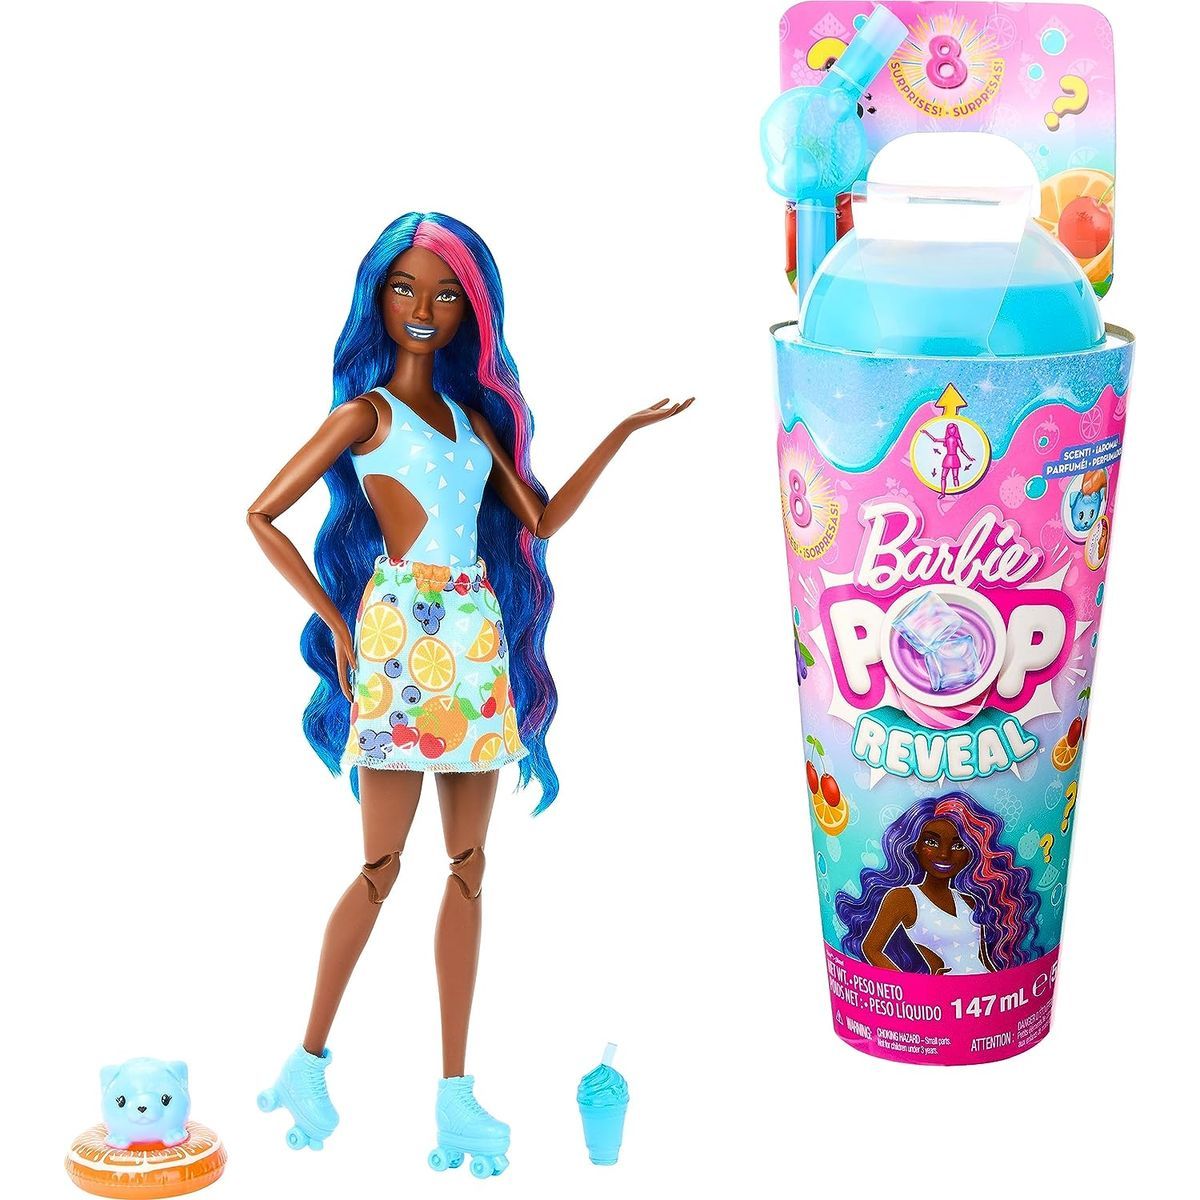 Barbie Pop Reveal Šťavnaté ovocie Ovocný punč